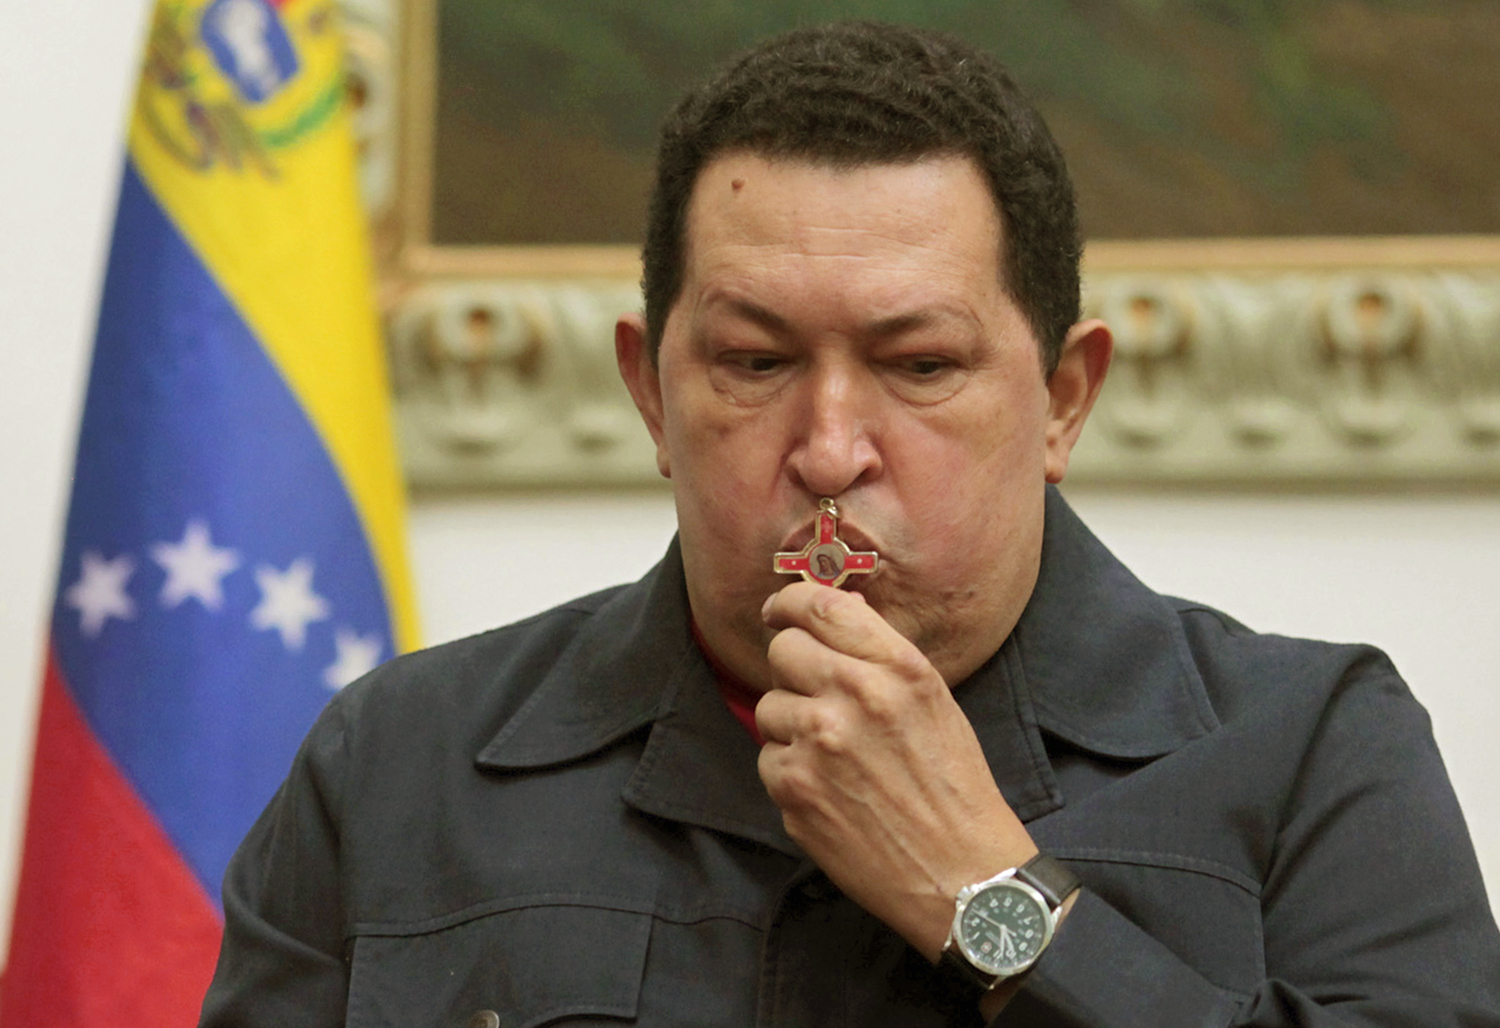 Hugo Chavez megcsókol egy keresztet, miután tavaly decemberben nyilvánosan bejelentette, daganatos betegségének kiújulása miatt újabb műtéten fog átesni